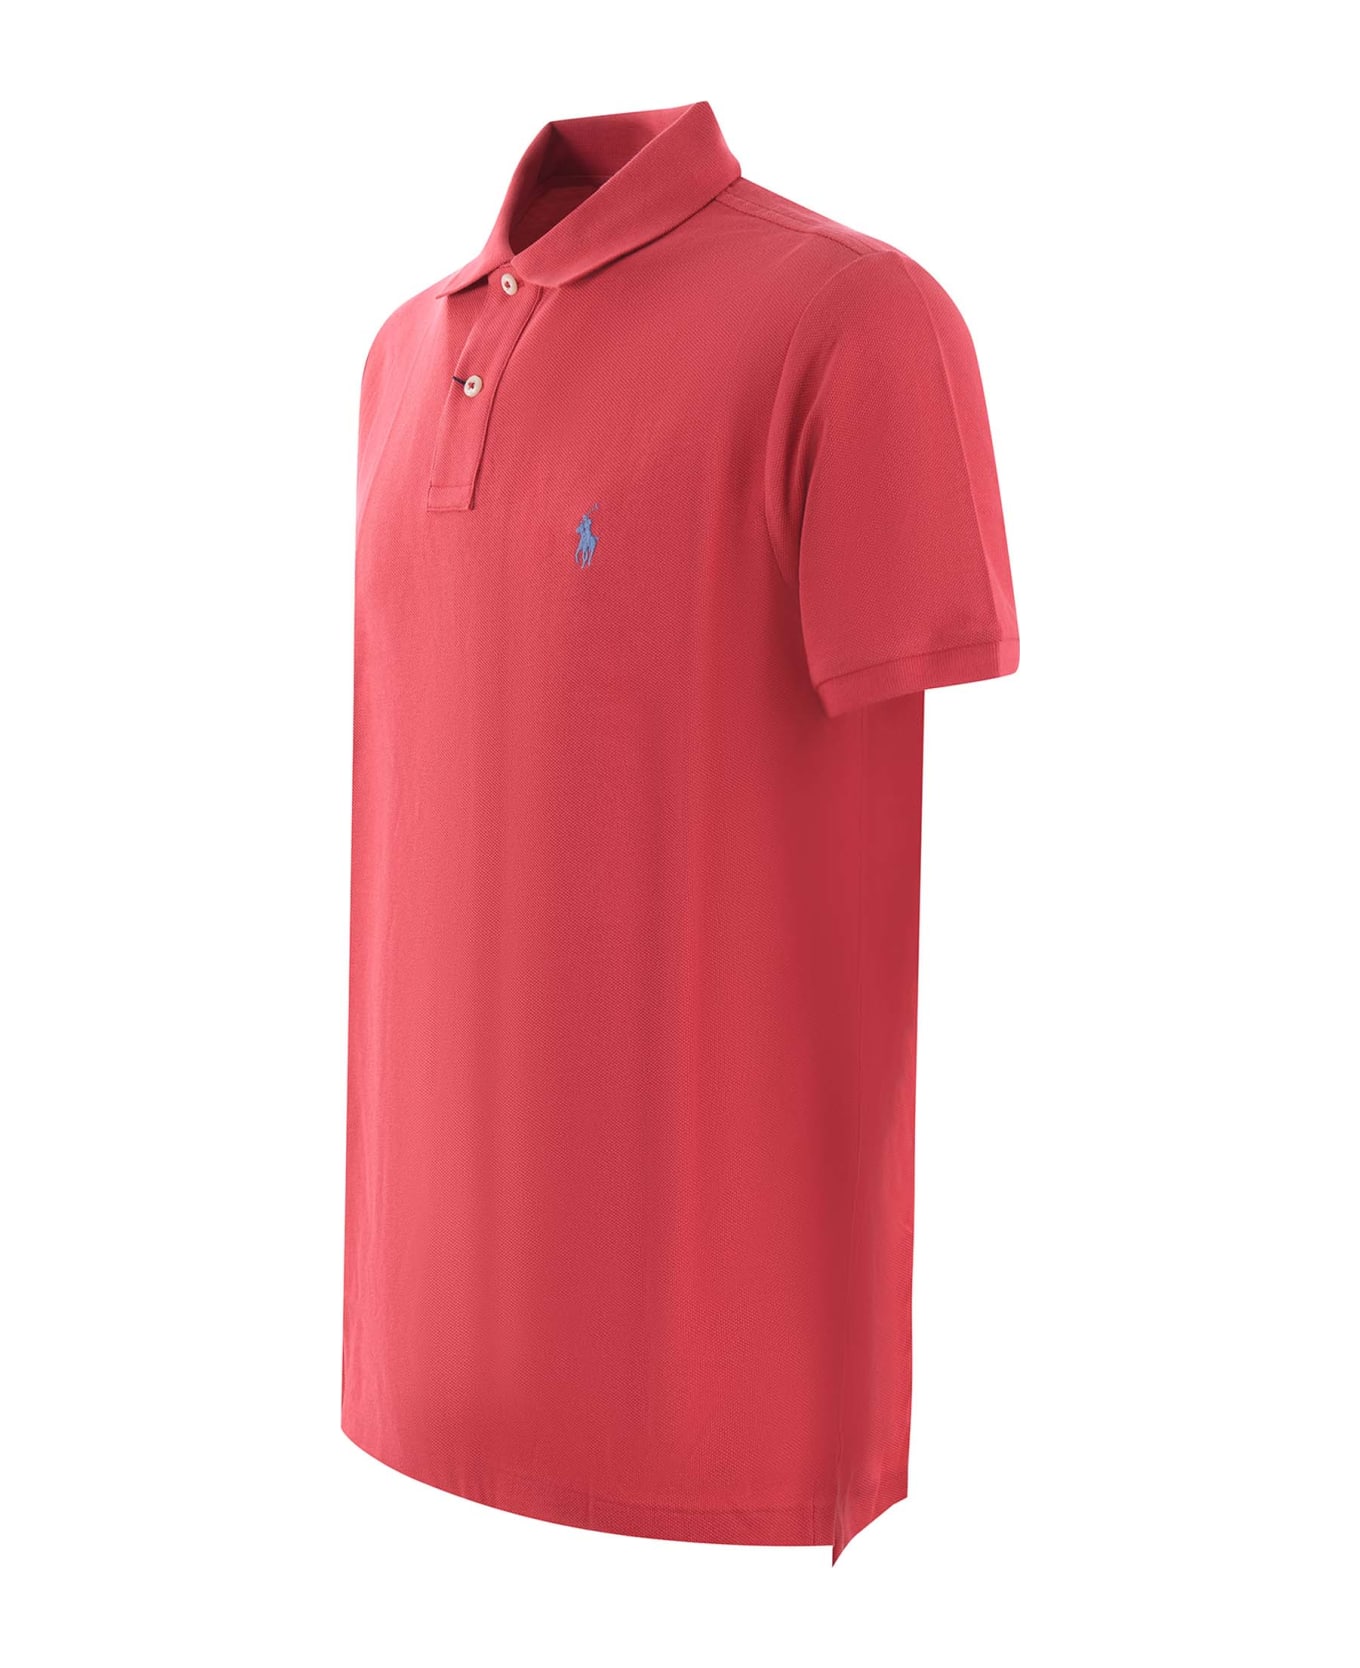 Polo Ralph Lauren "polo Ralph Lauren" Polo Shirt - Rosso corallo ポロシャツ